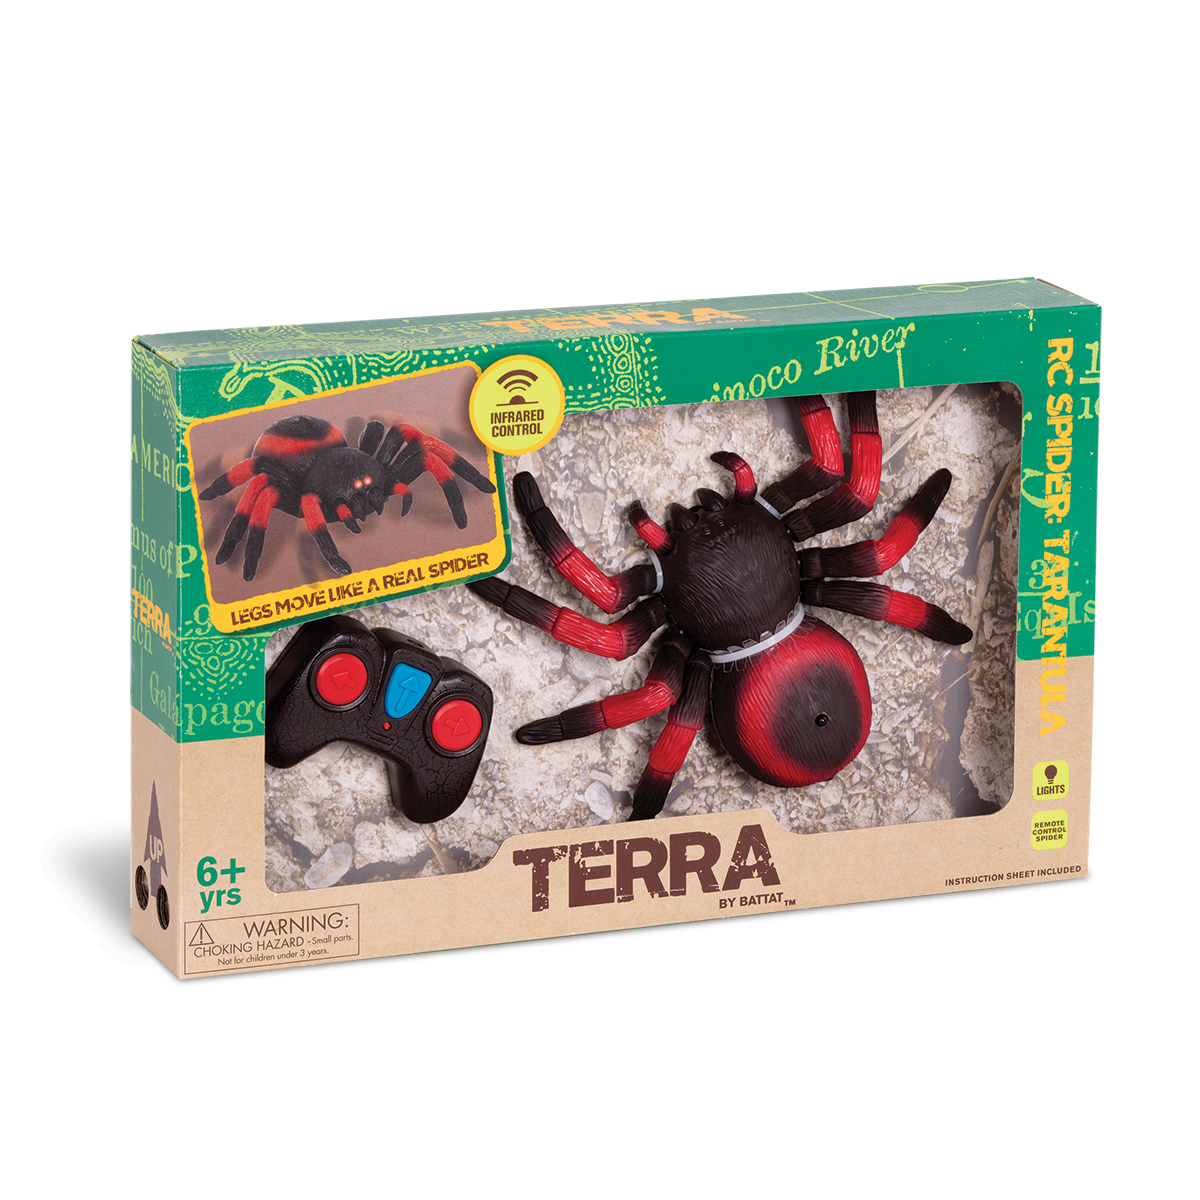 Tarantula – Terra by Battat